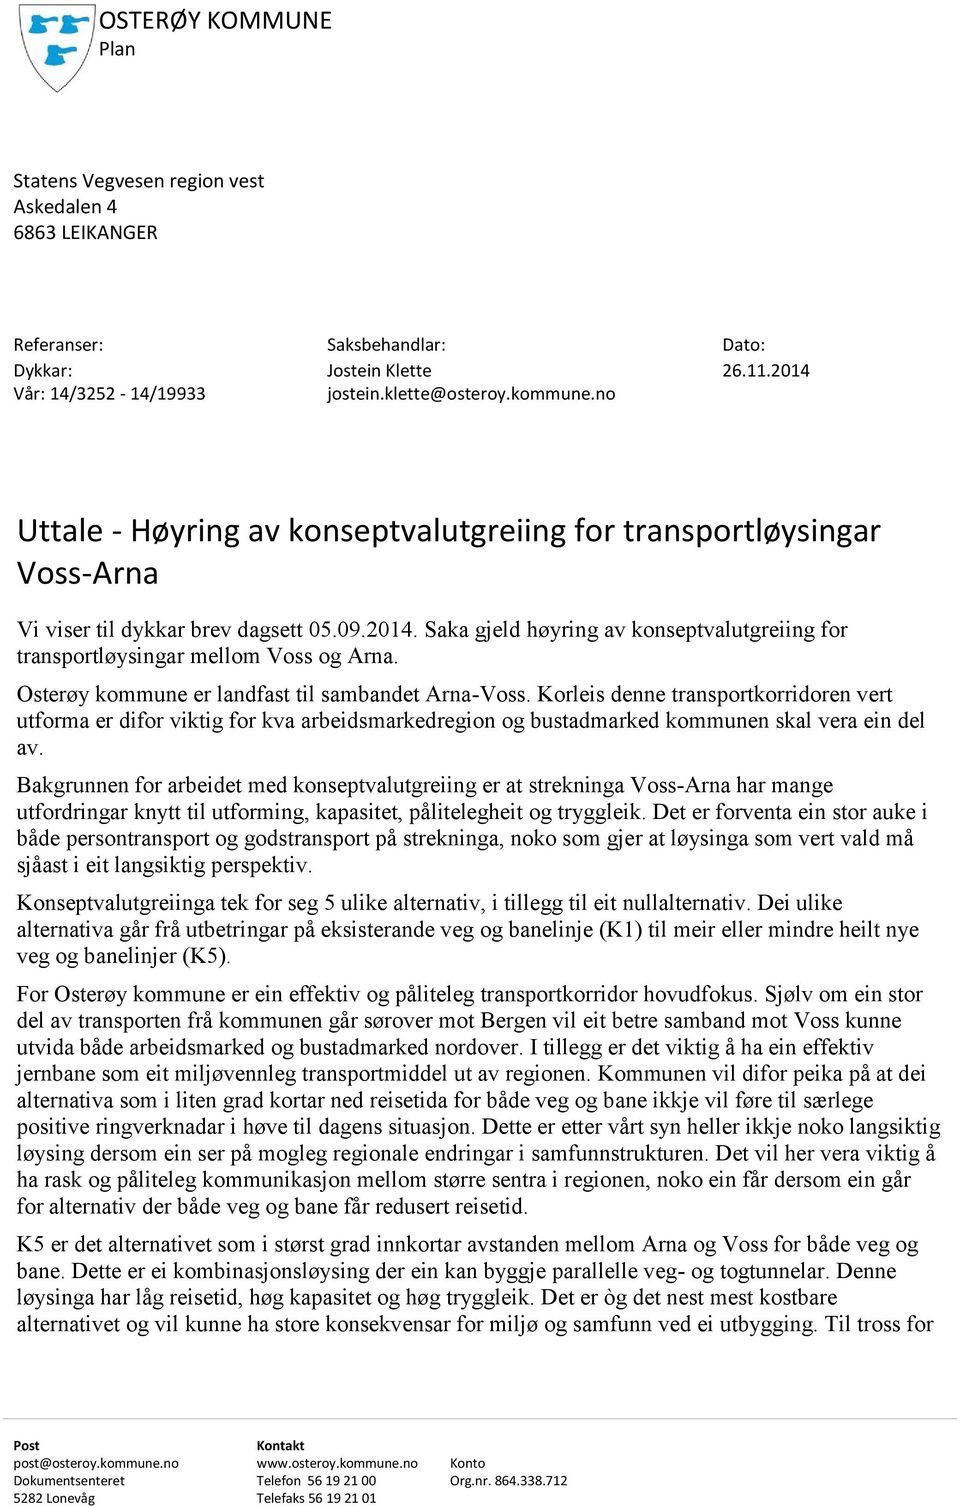 Saka gjeld høyring av konseptvalutgreiing for transportløysingar mellom Voss og Arna. Osterøy kommune er landfast til sambandet Arna-Voss.